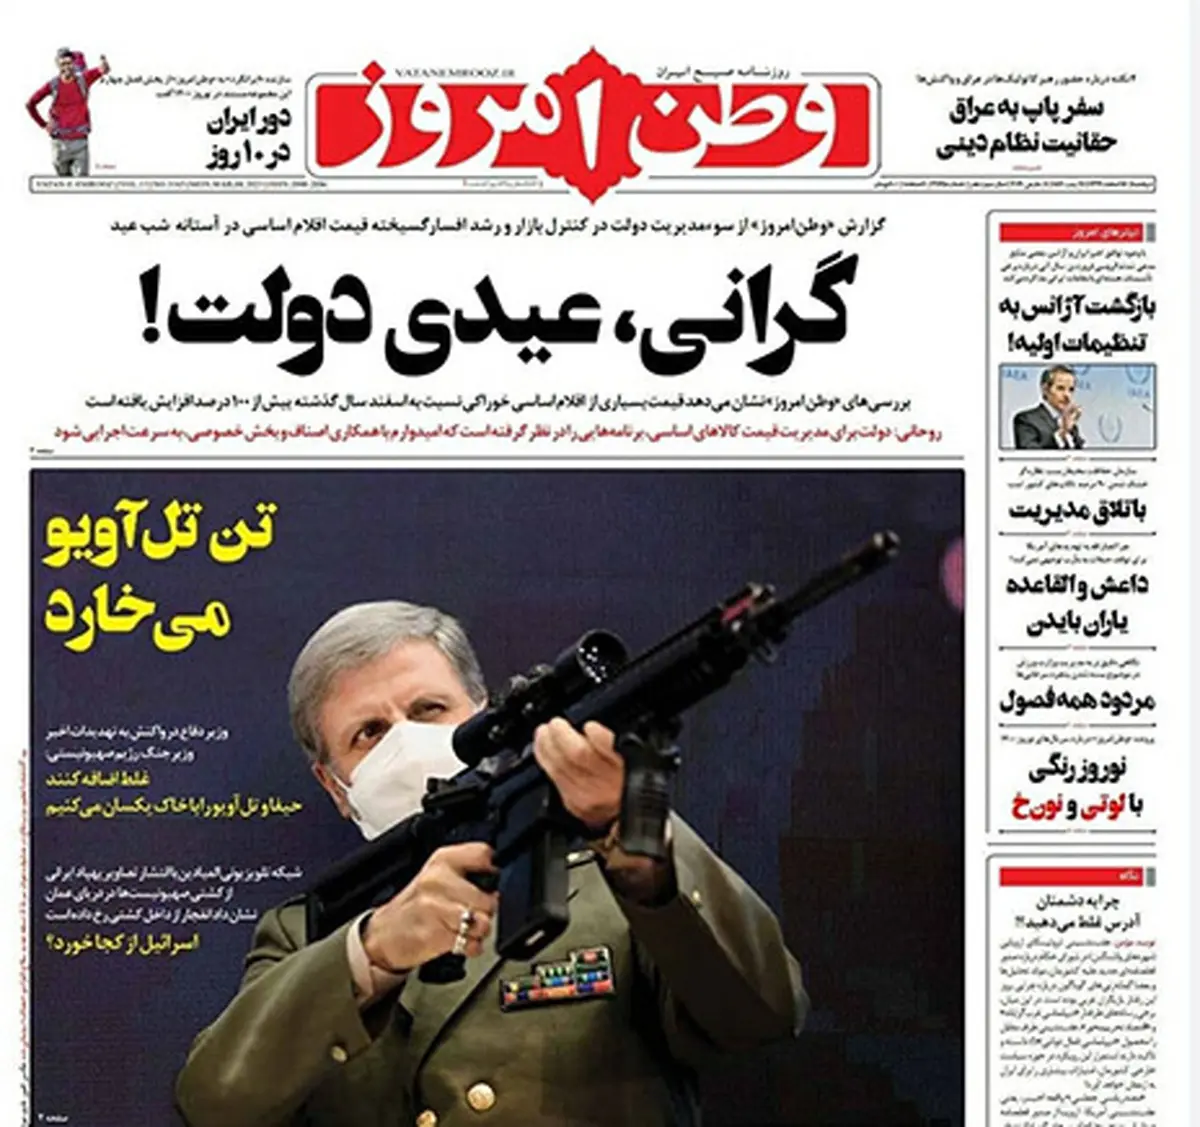 تیتر عجیب یک روزنامه درباره رژیم صهیونیستی+عکس | وطن امروز درباره رژیم صهیونیستی چه نوشت؟